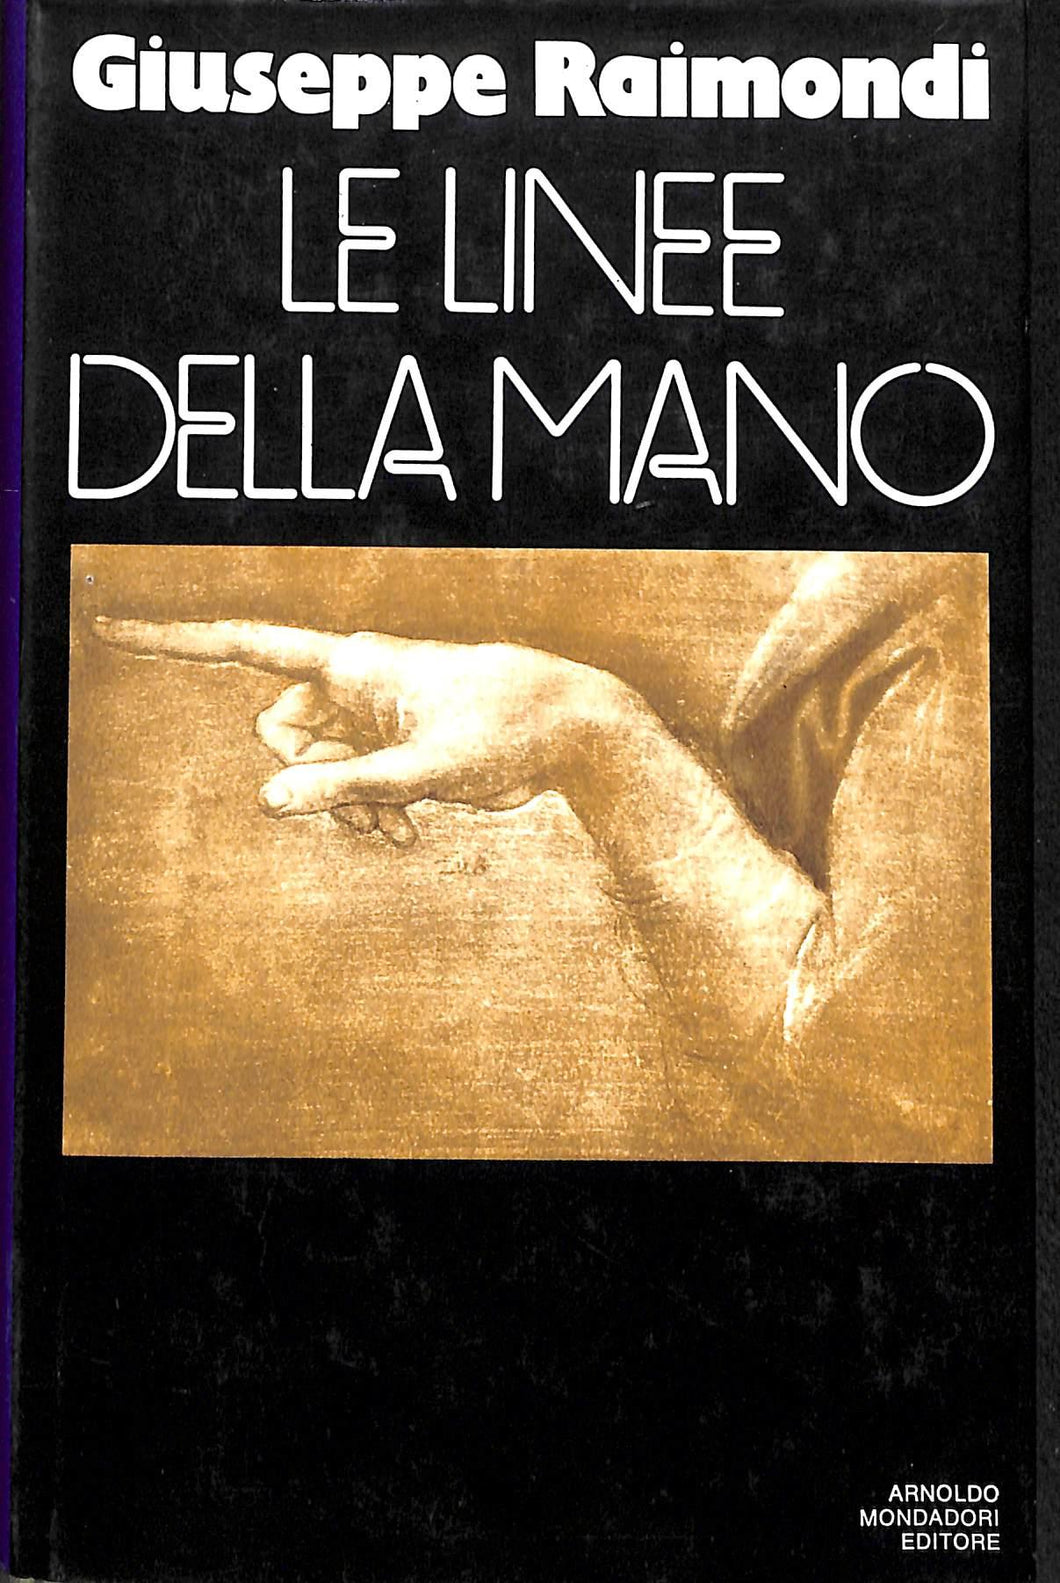 Le linee della mano : saggi letterari, 1956-1970 / Giuseppe Raimondi